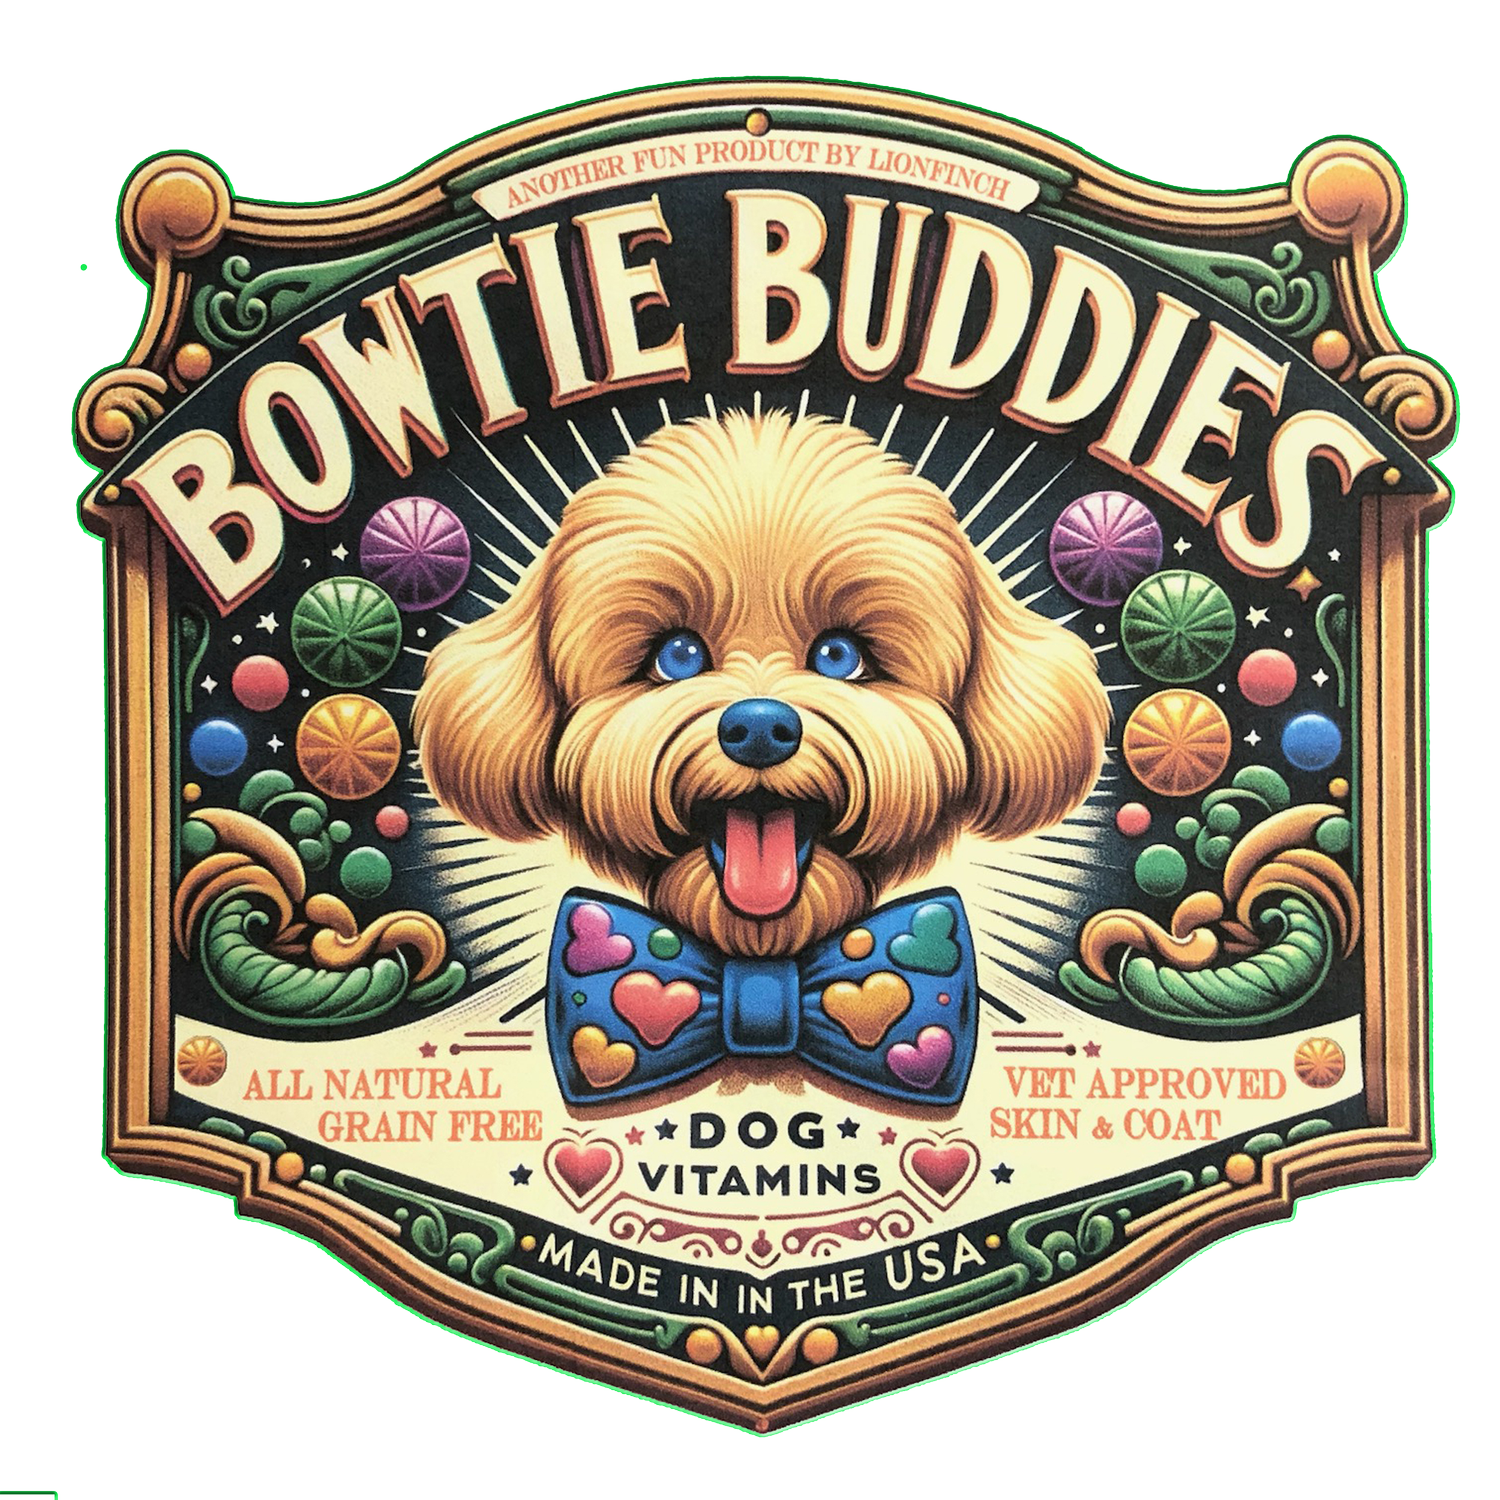 Bowtie Buddies Pet Vitamins